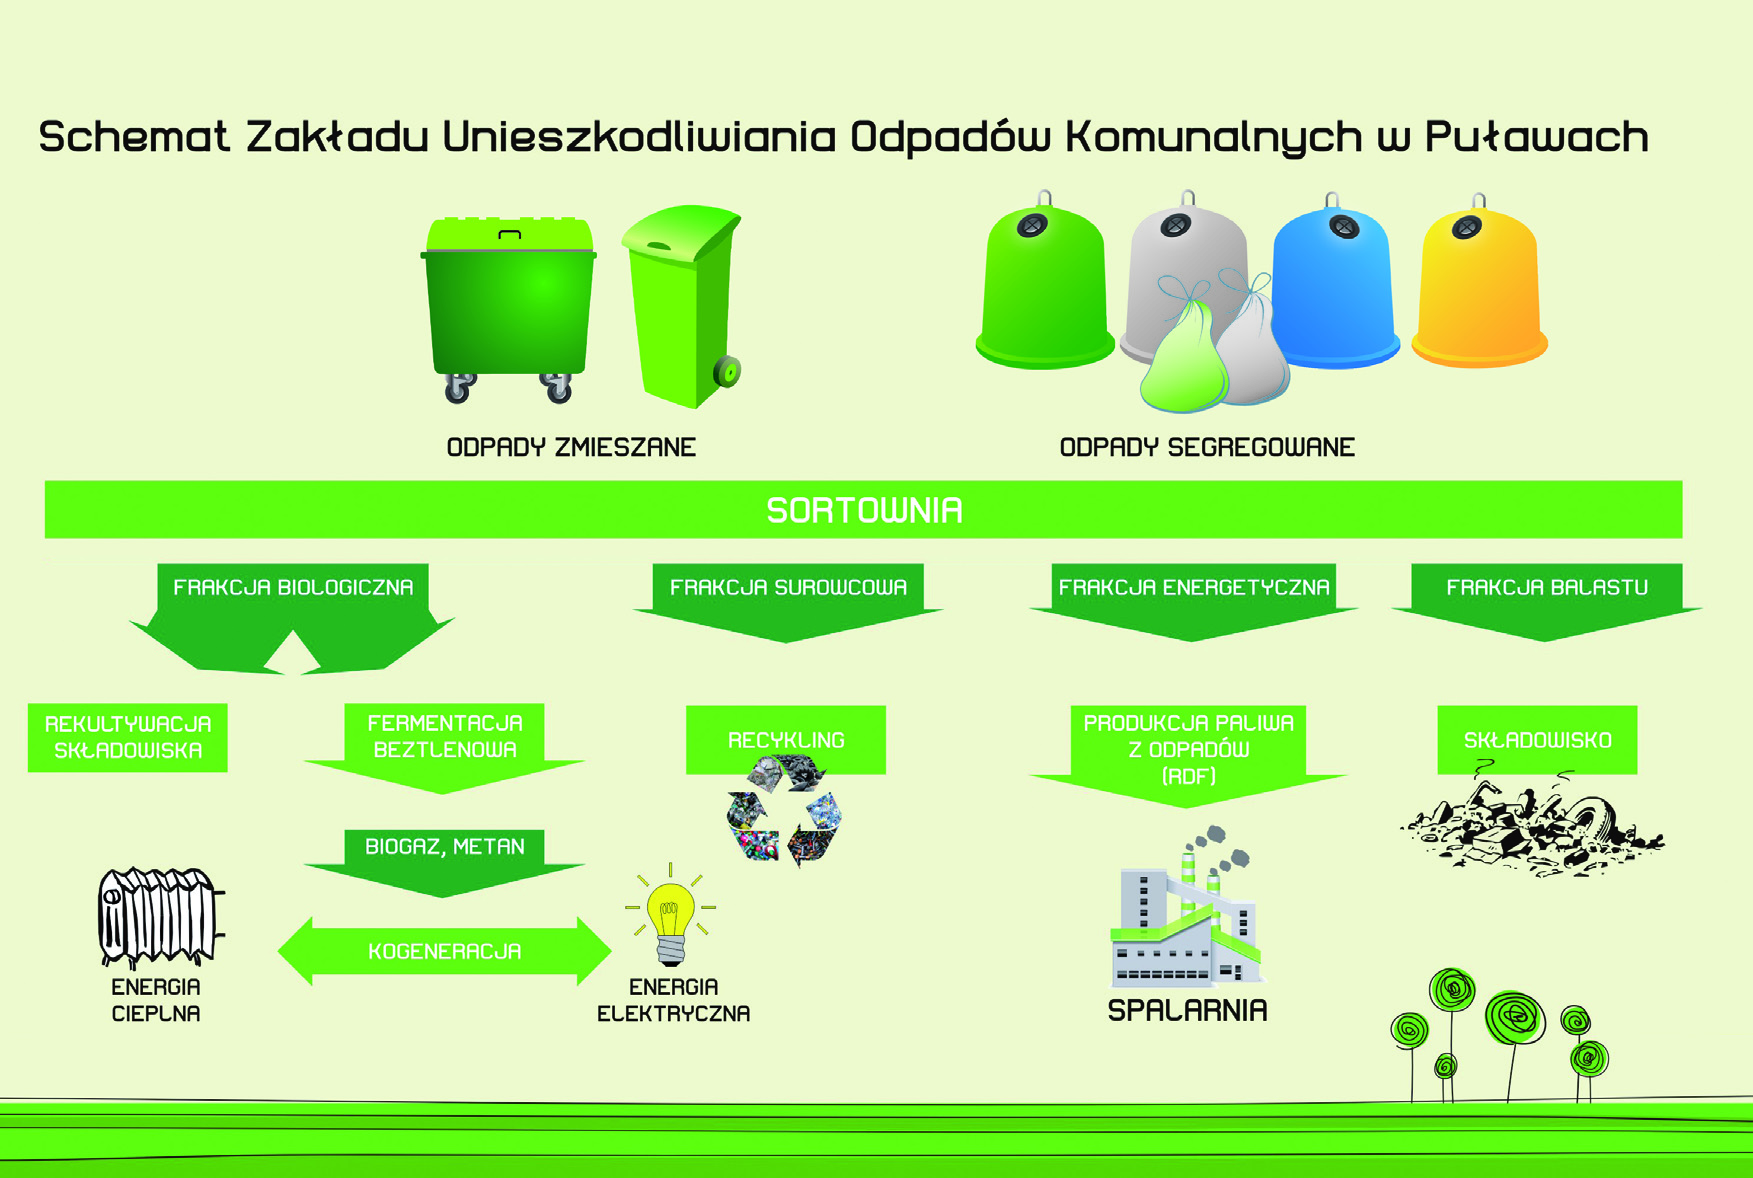 Dlaczego warto segregować odpady u źródła? Dzięki segregacji u źródła możliwe jest przekazywanie dobrej jakości surowców wtórnych do recyklingu.